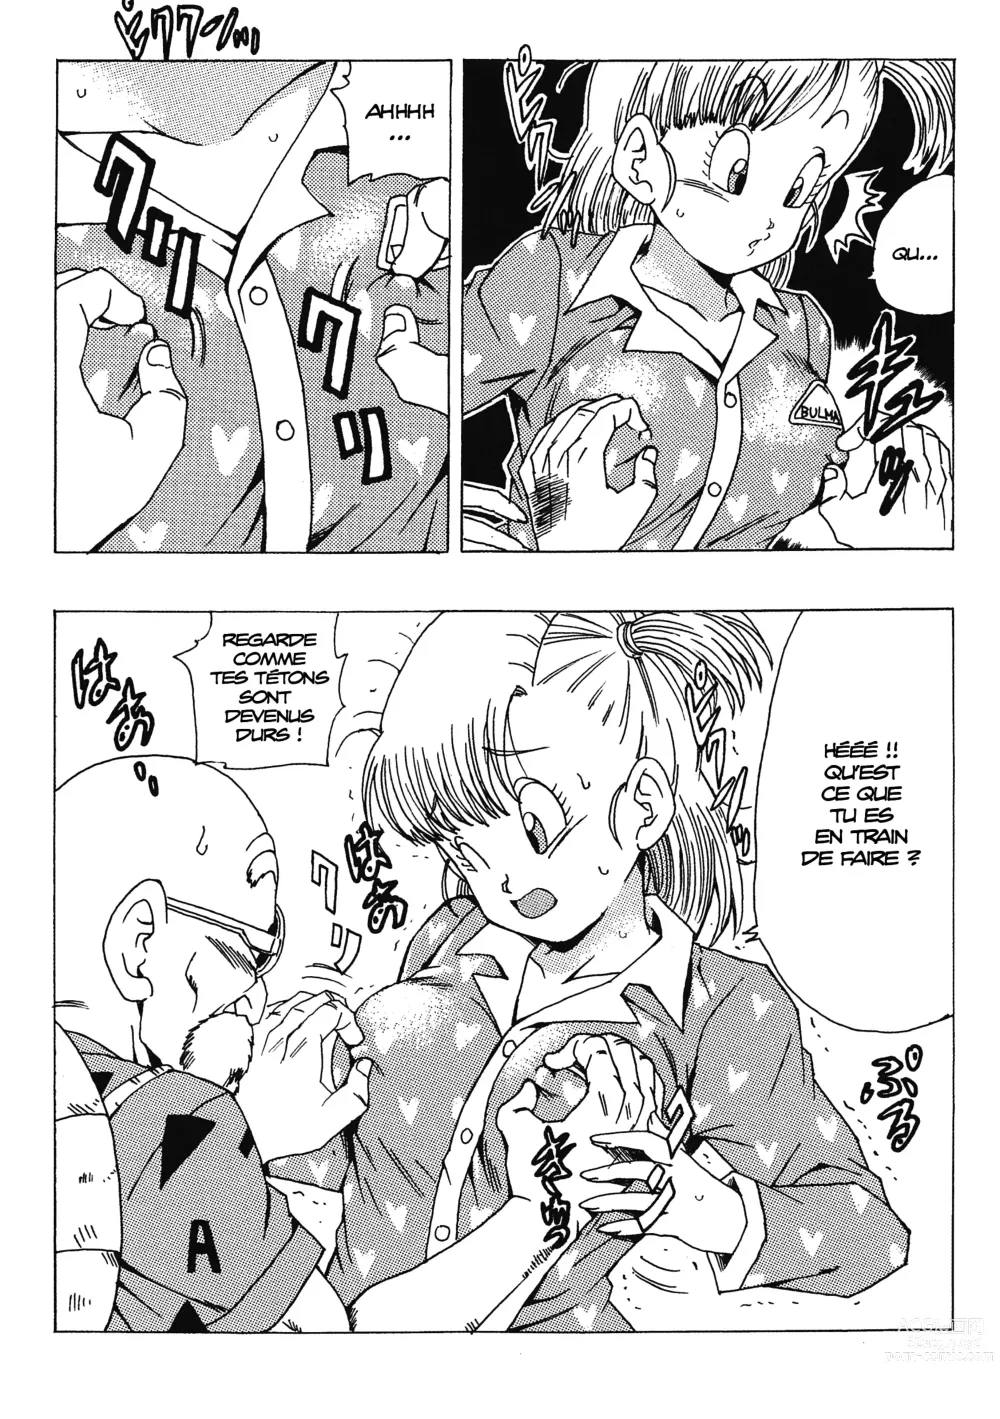 Page 26 of doujinshi Bulma no Saikyou e no Michi